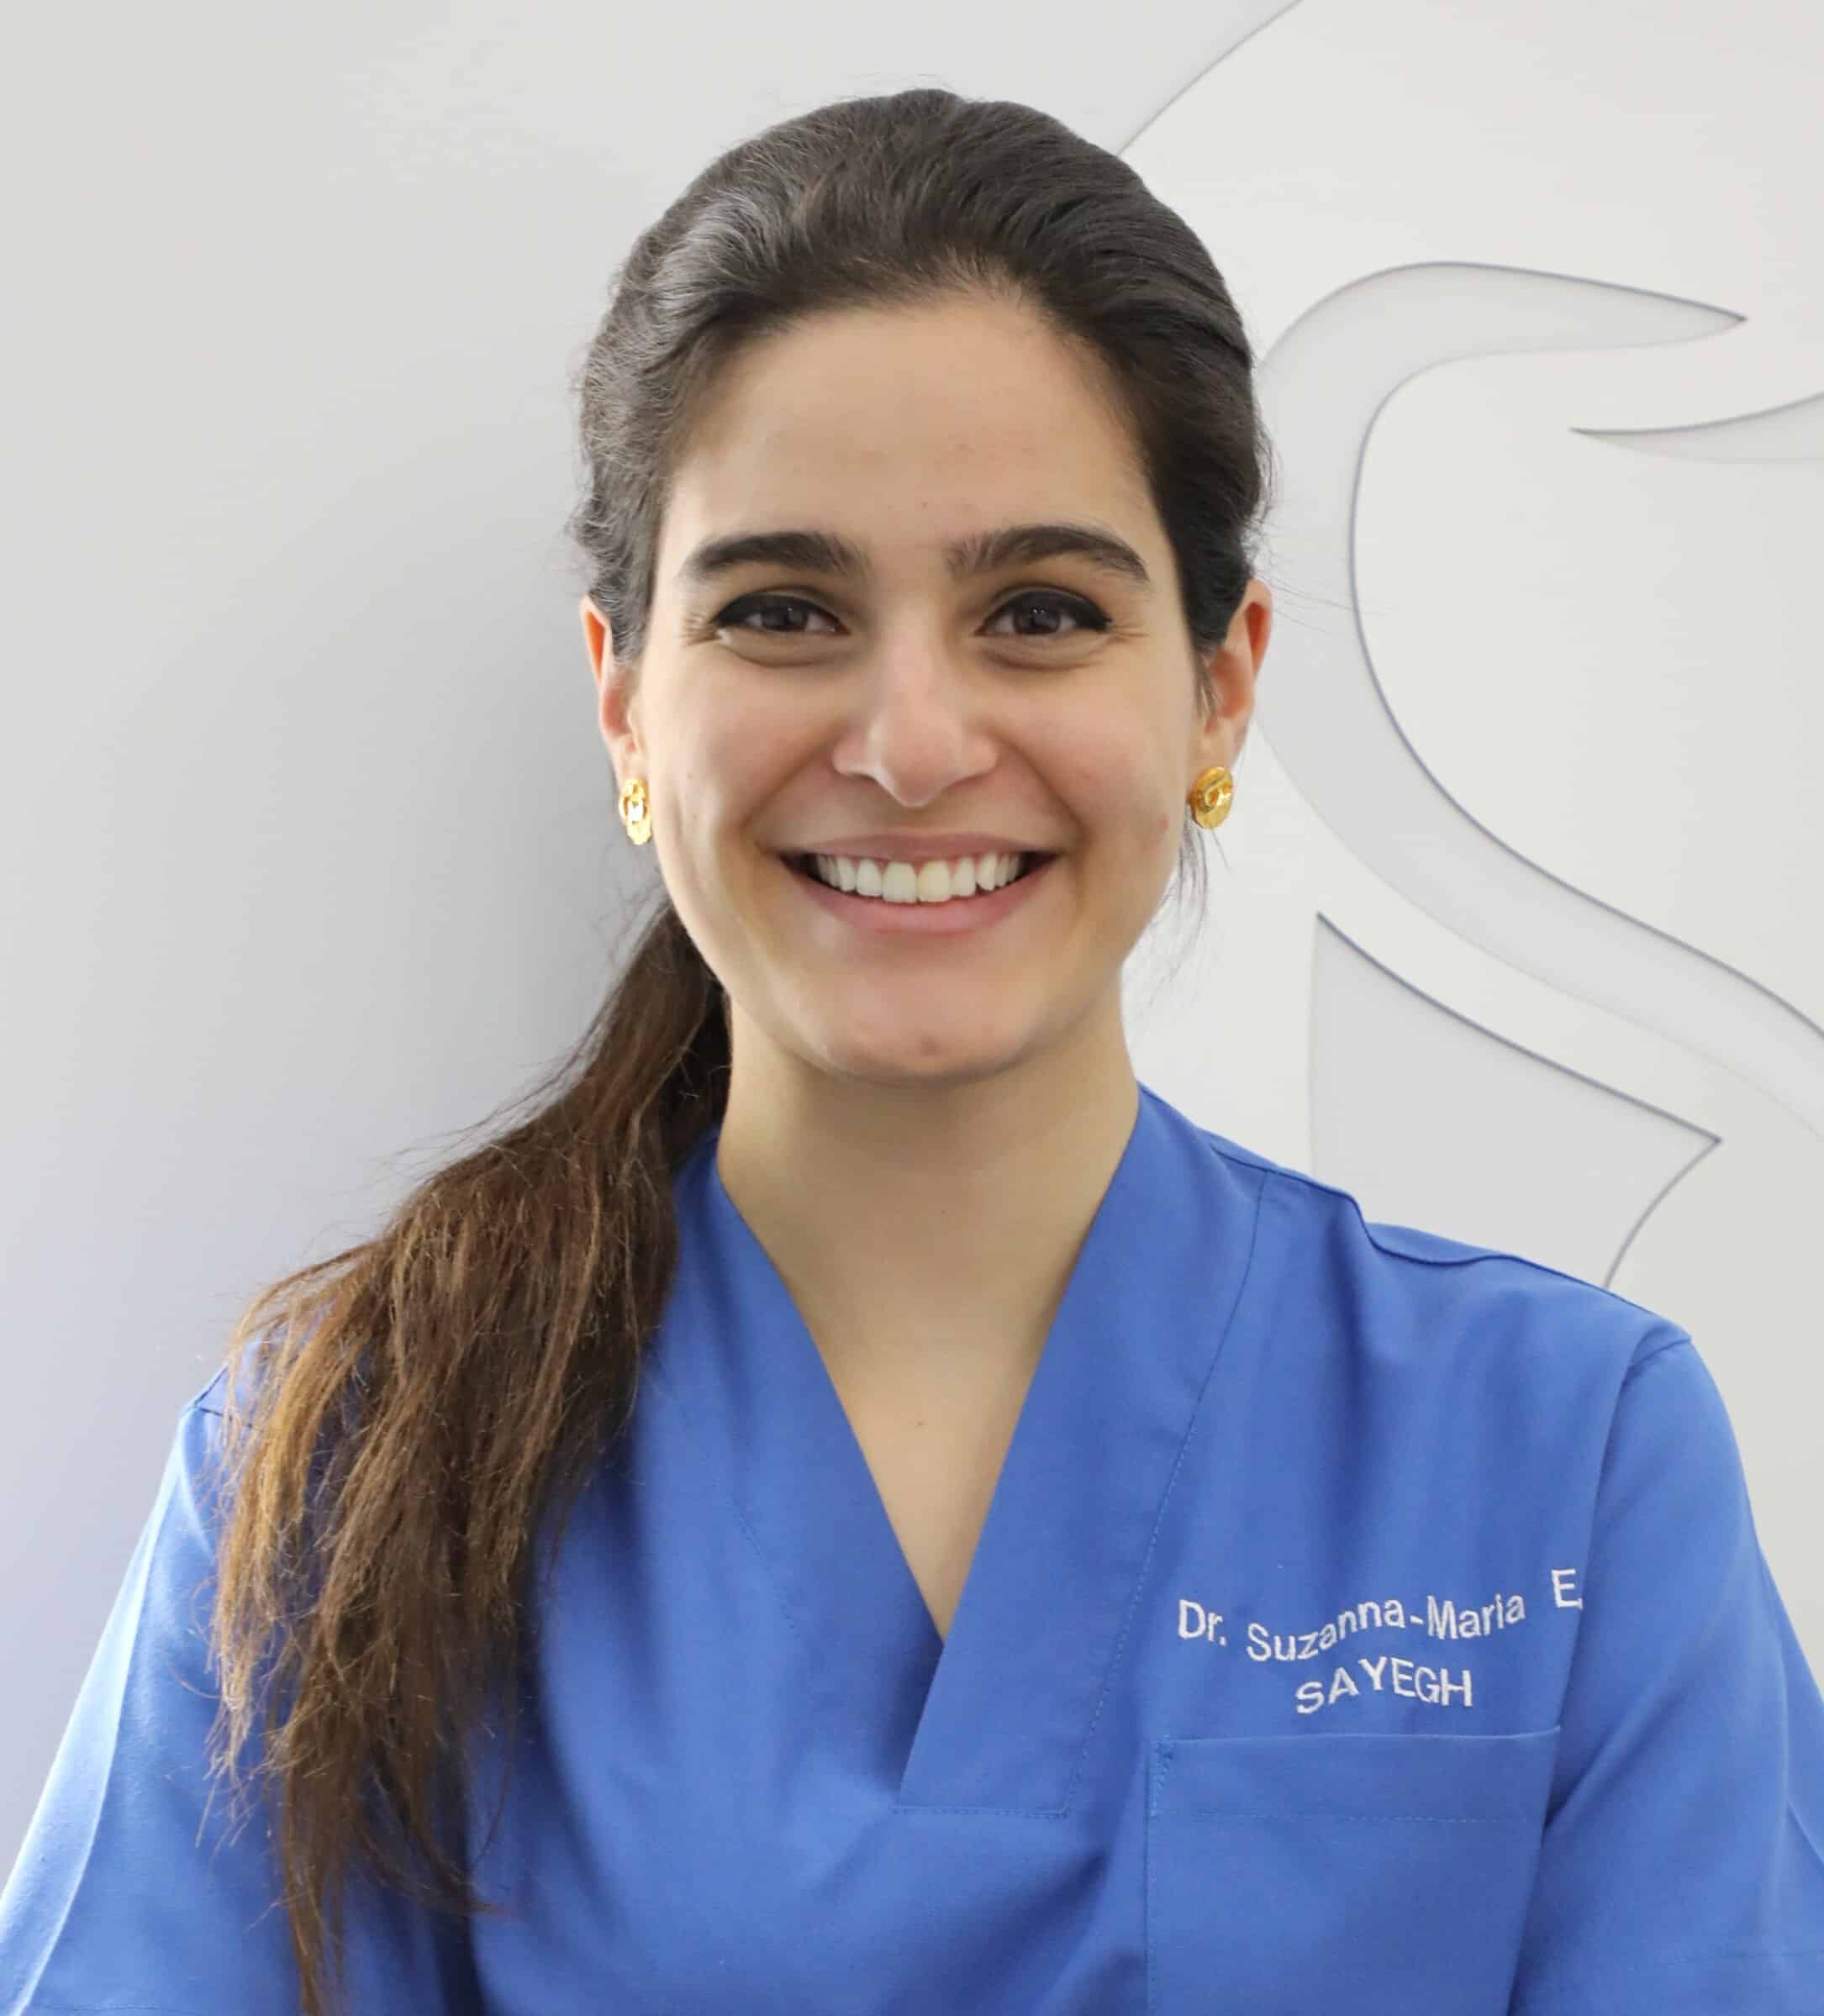 Dr. Suzanna Maria Sayegh